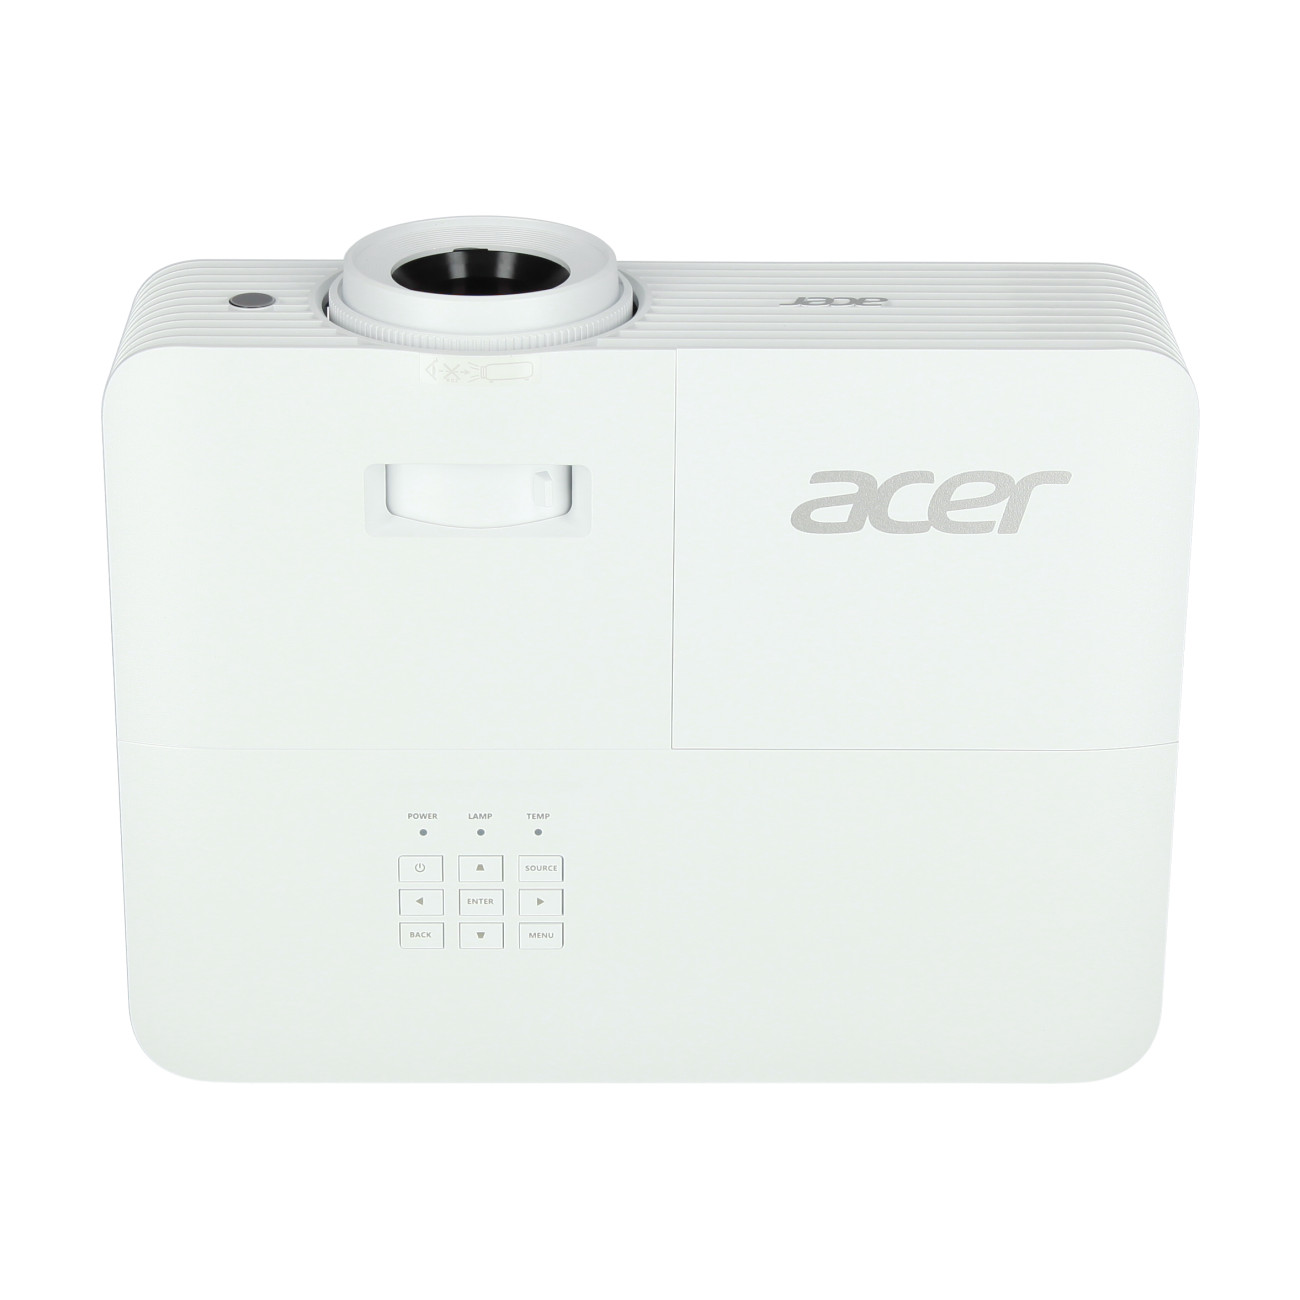 Acer-P5827a-Demoware-Platin